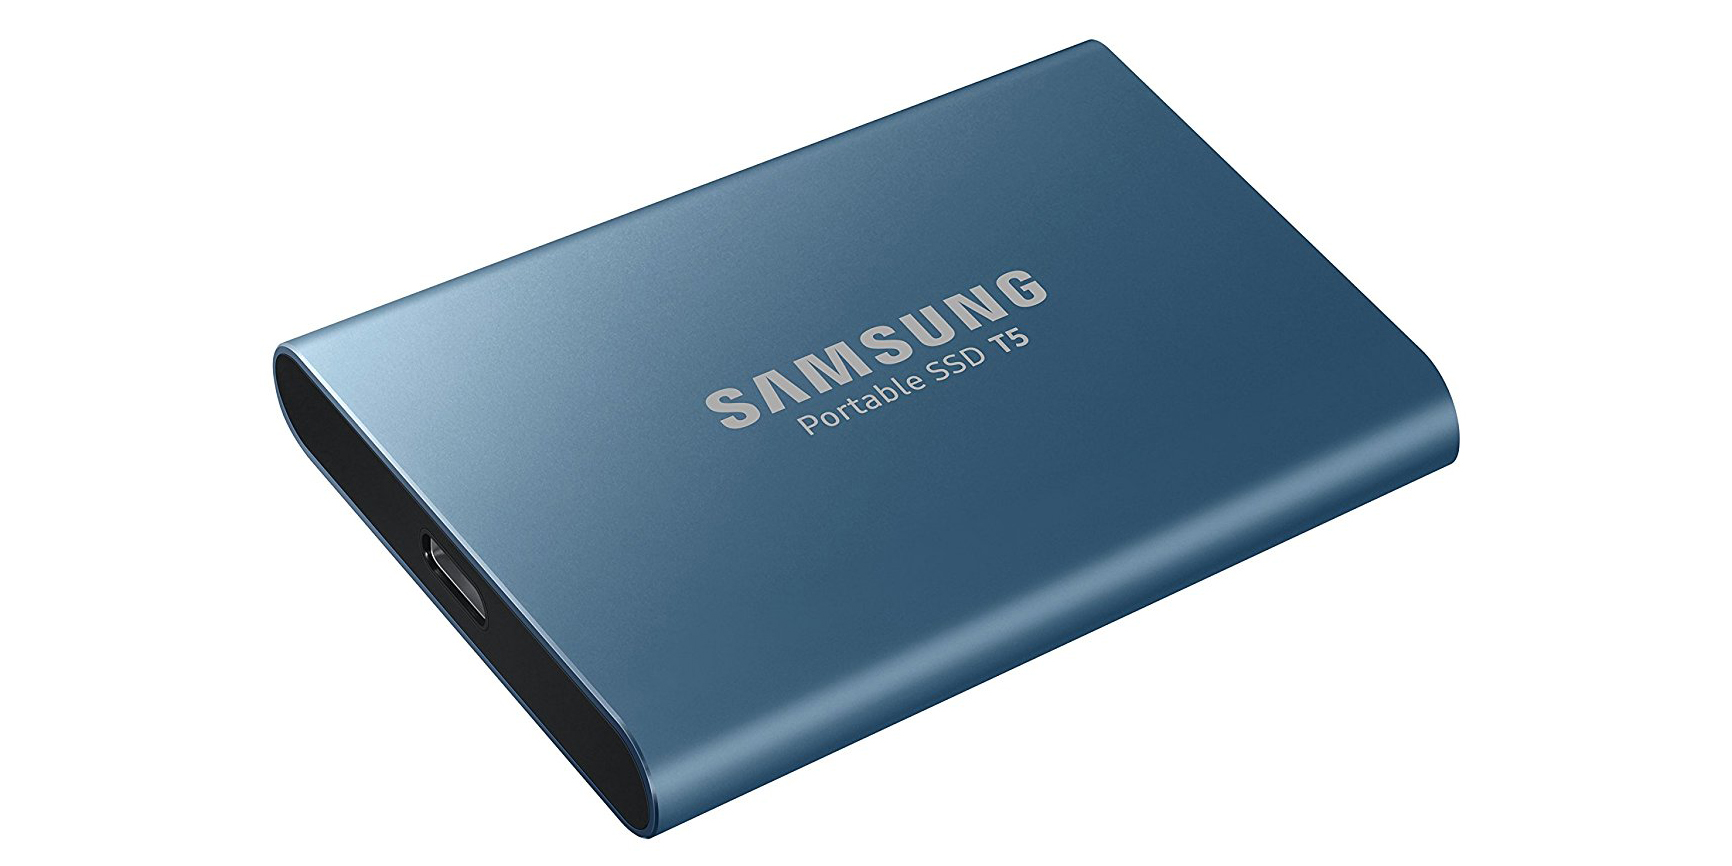 tildele race sikkerhedsstillelse Samsung unveils new T5 USB-C portable solid-state drives, priced from $130  - 9to5Mac